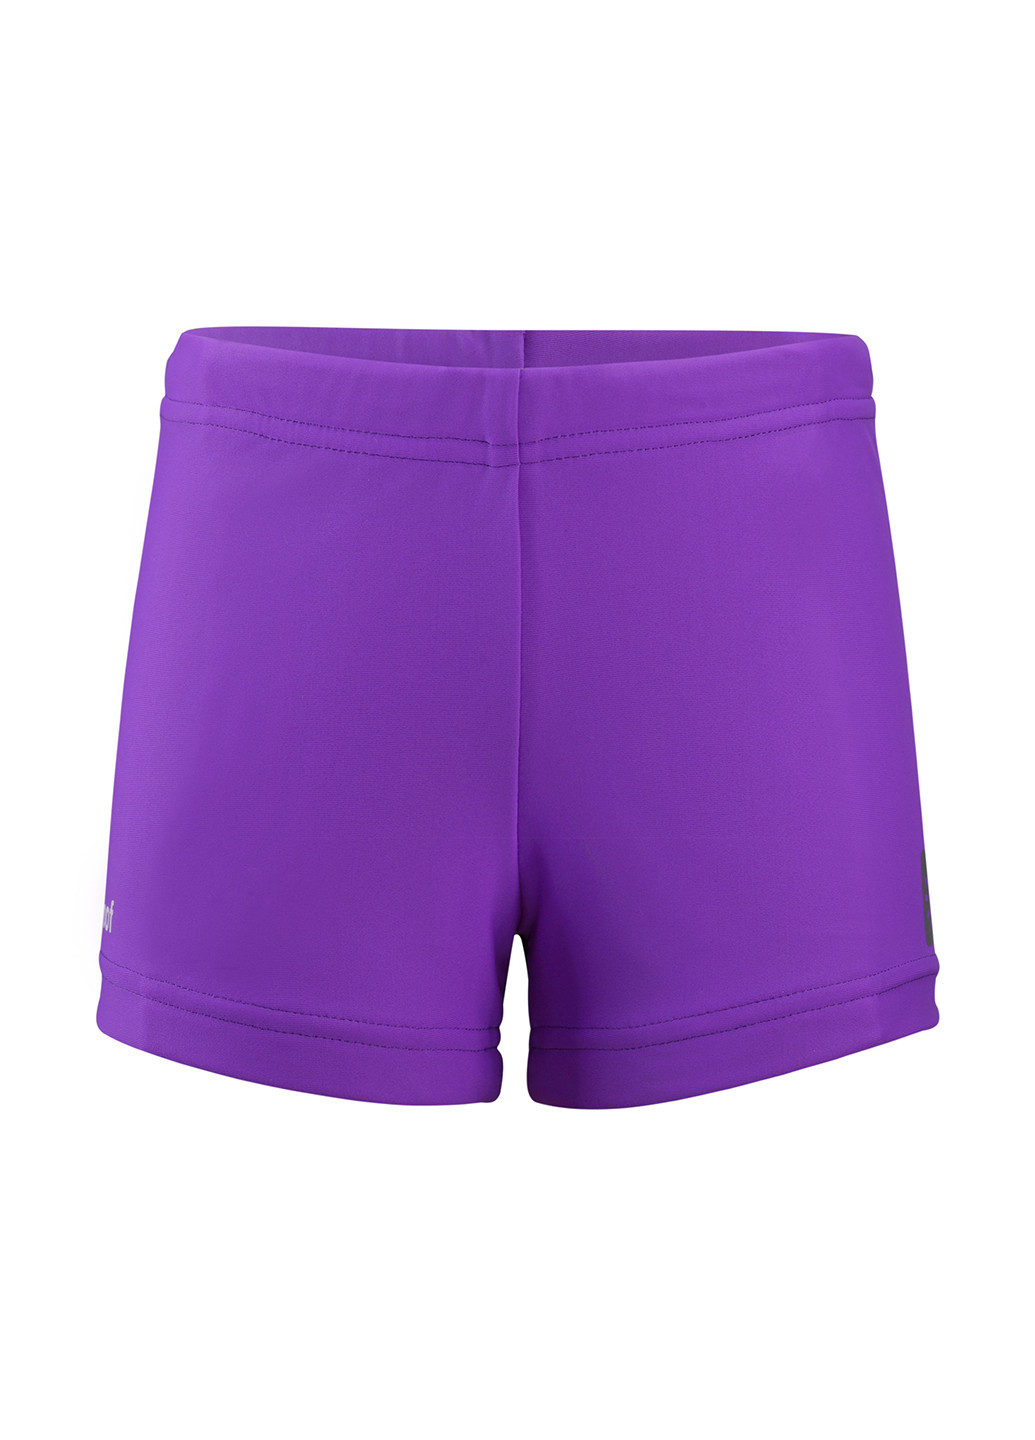 Плавки Reima боксеры фиолетовые пляжные трикотаж